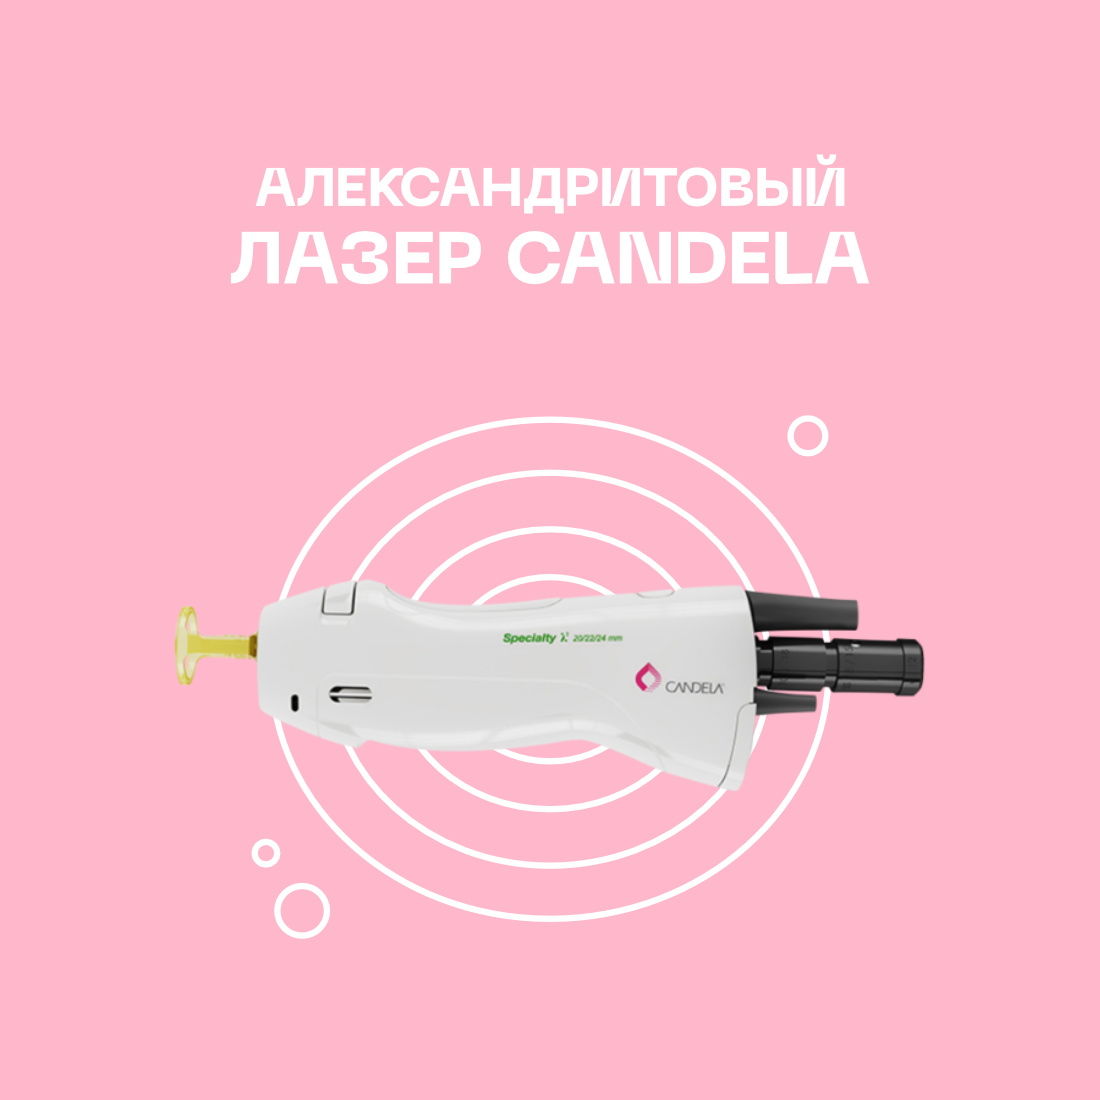 Candella-laser